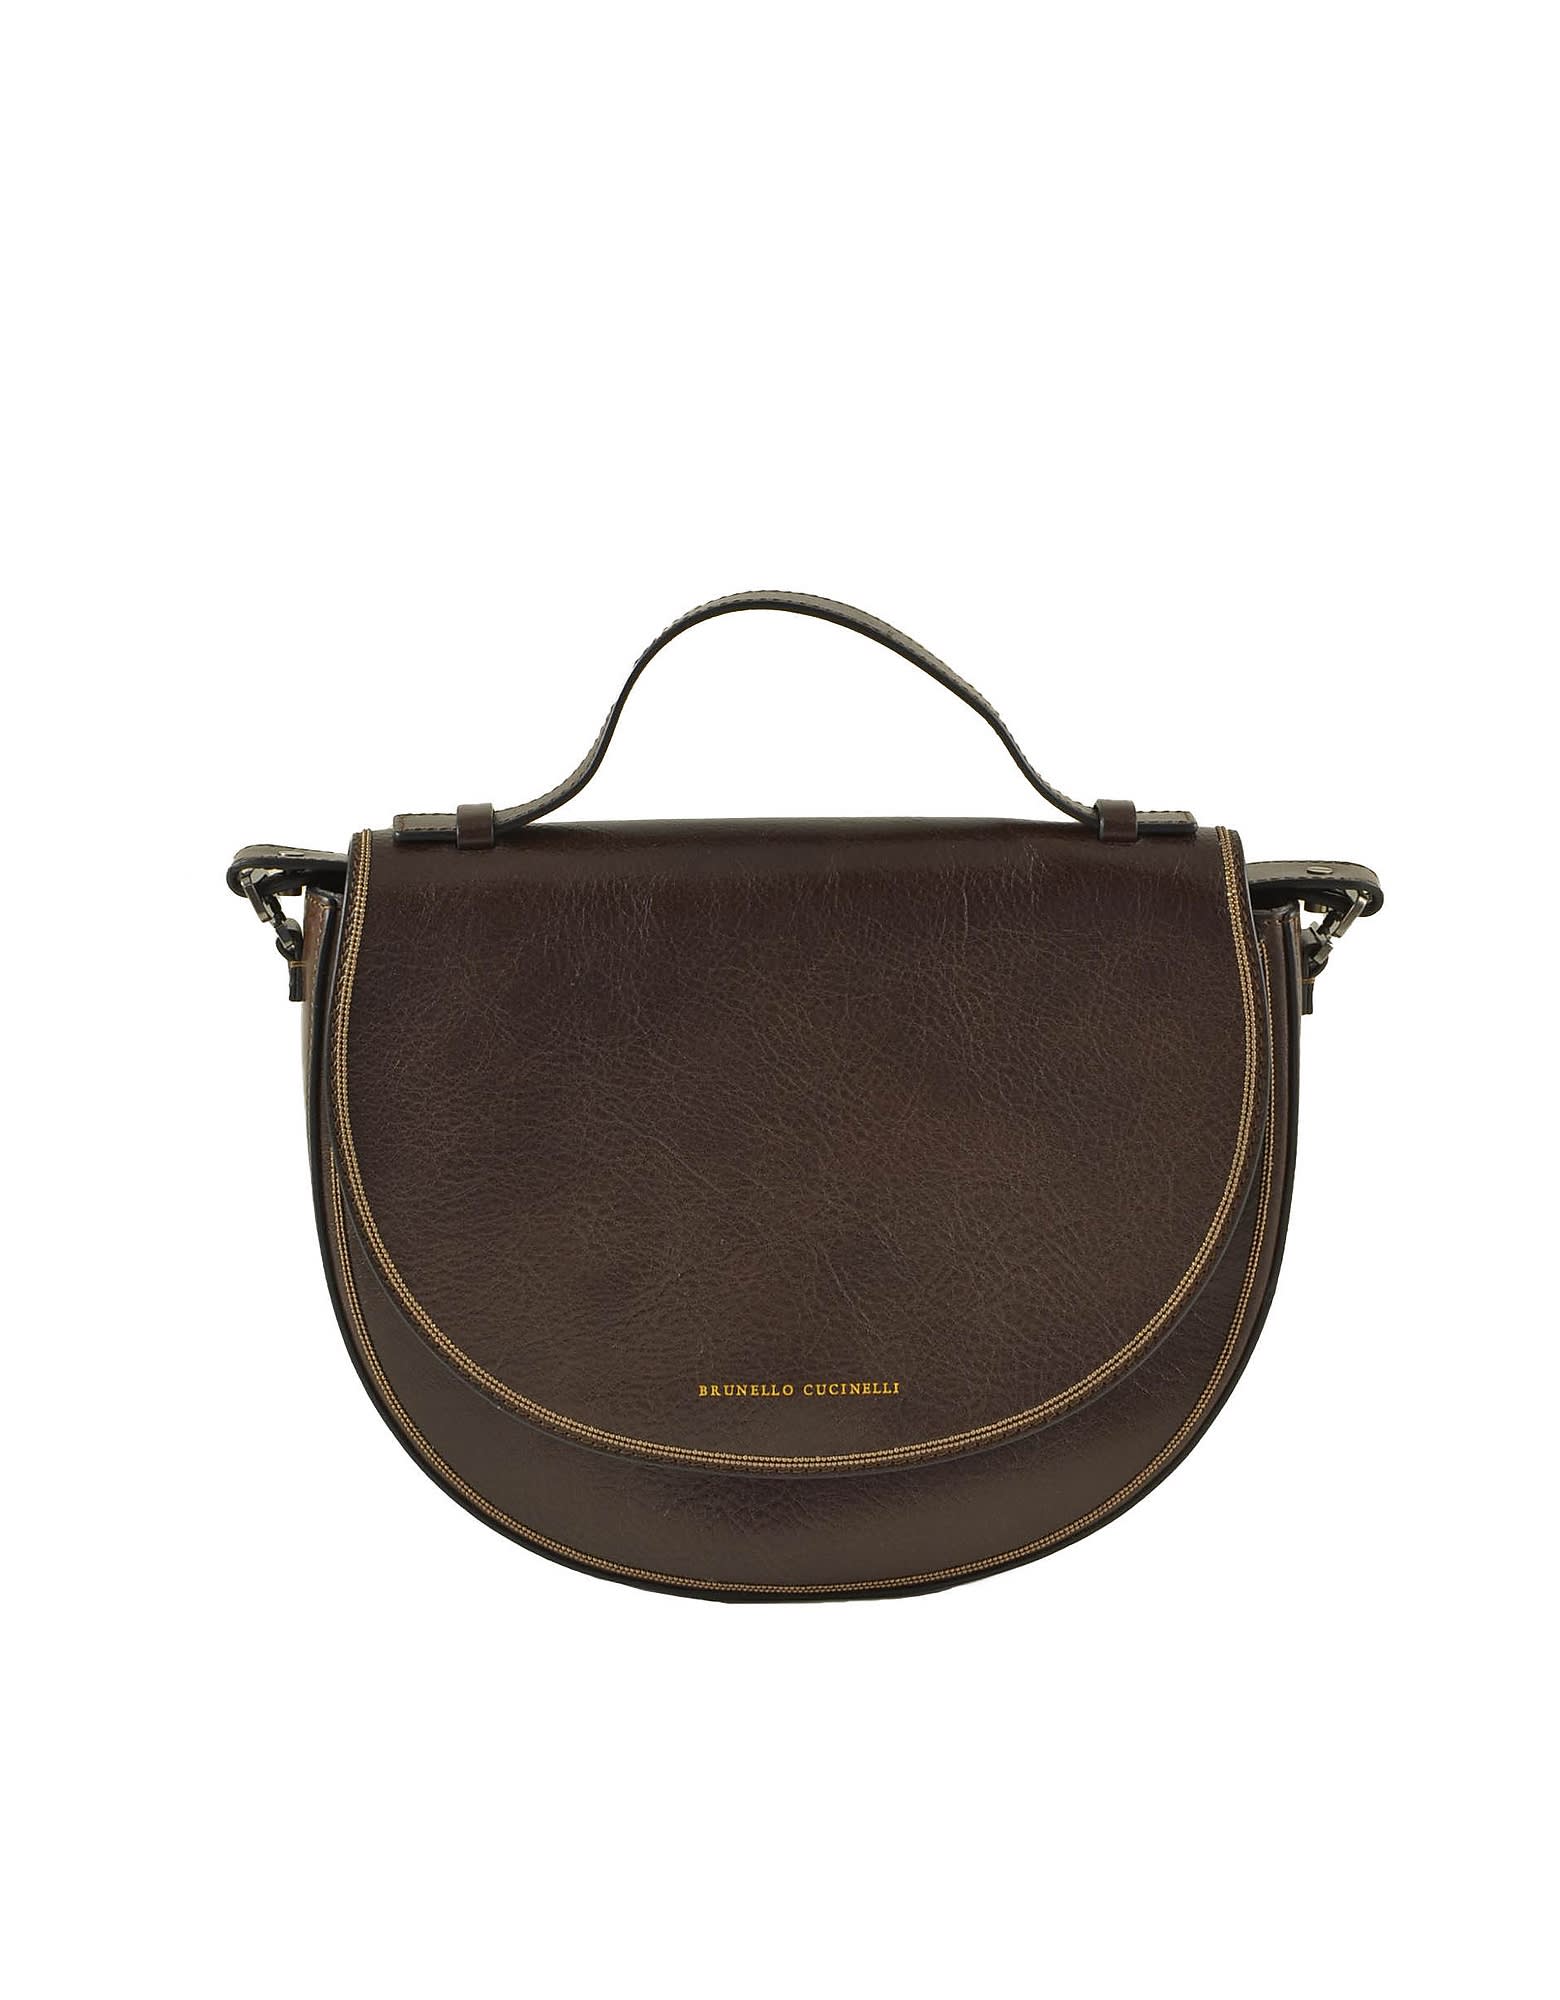 Brunello Cucinelli Womens Brown Handbag